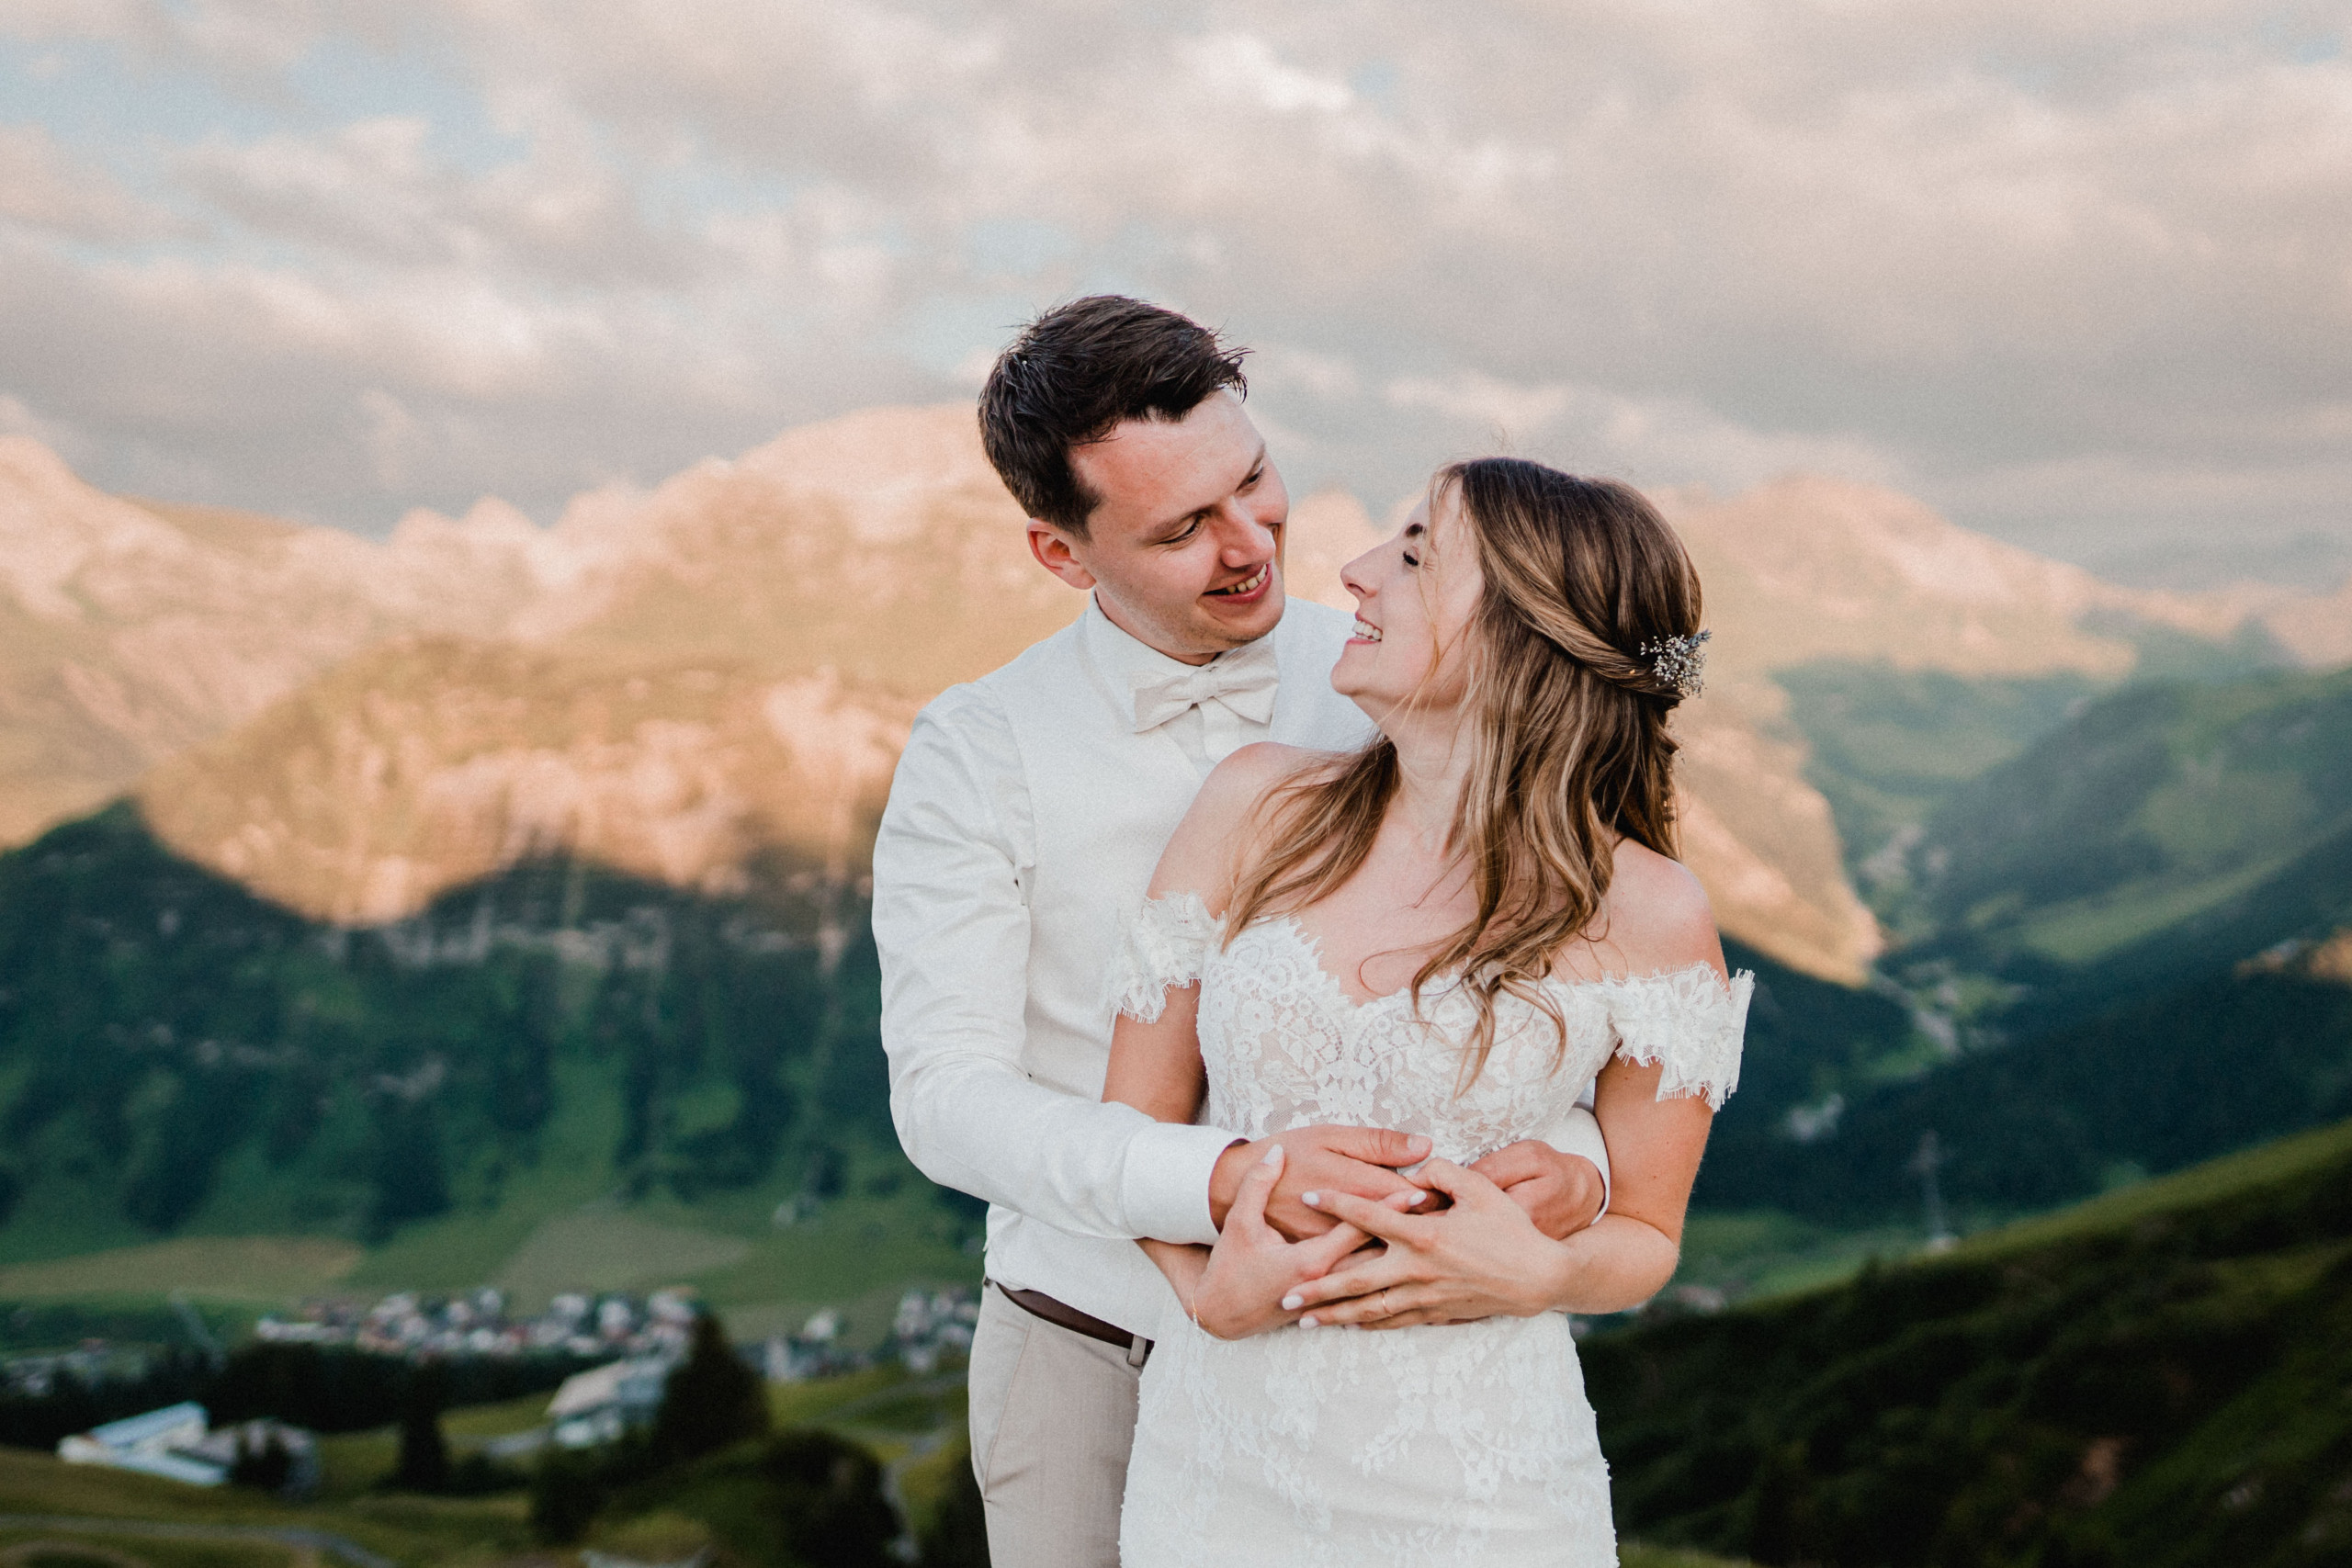 Aida + Tim | Hochzeitsfotografen am Bodensee Hochzeitsfotografen und Videografen aus Konstanz am Bodensee | DE, CH & O  - Hochzeitsfotografie von Aida und Tim